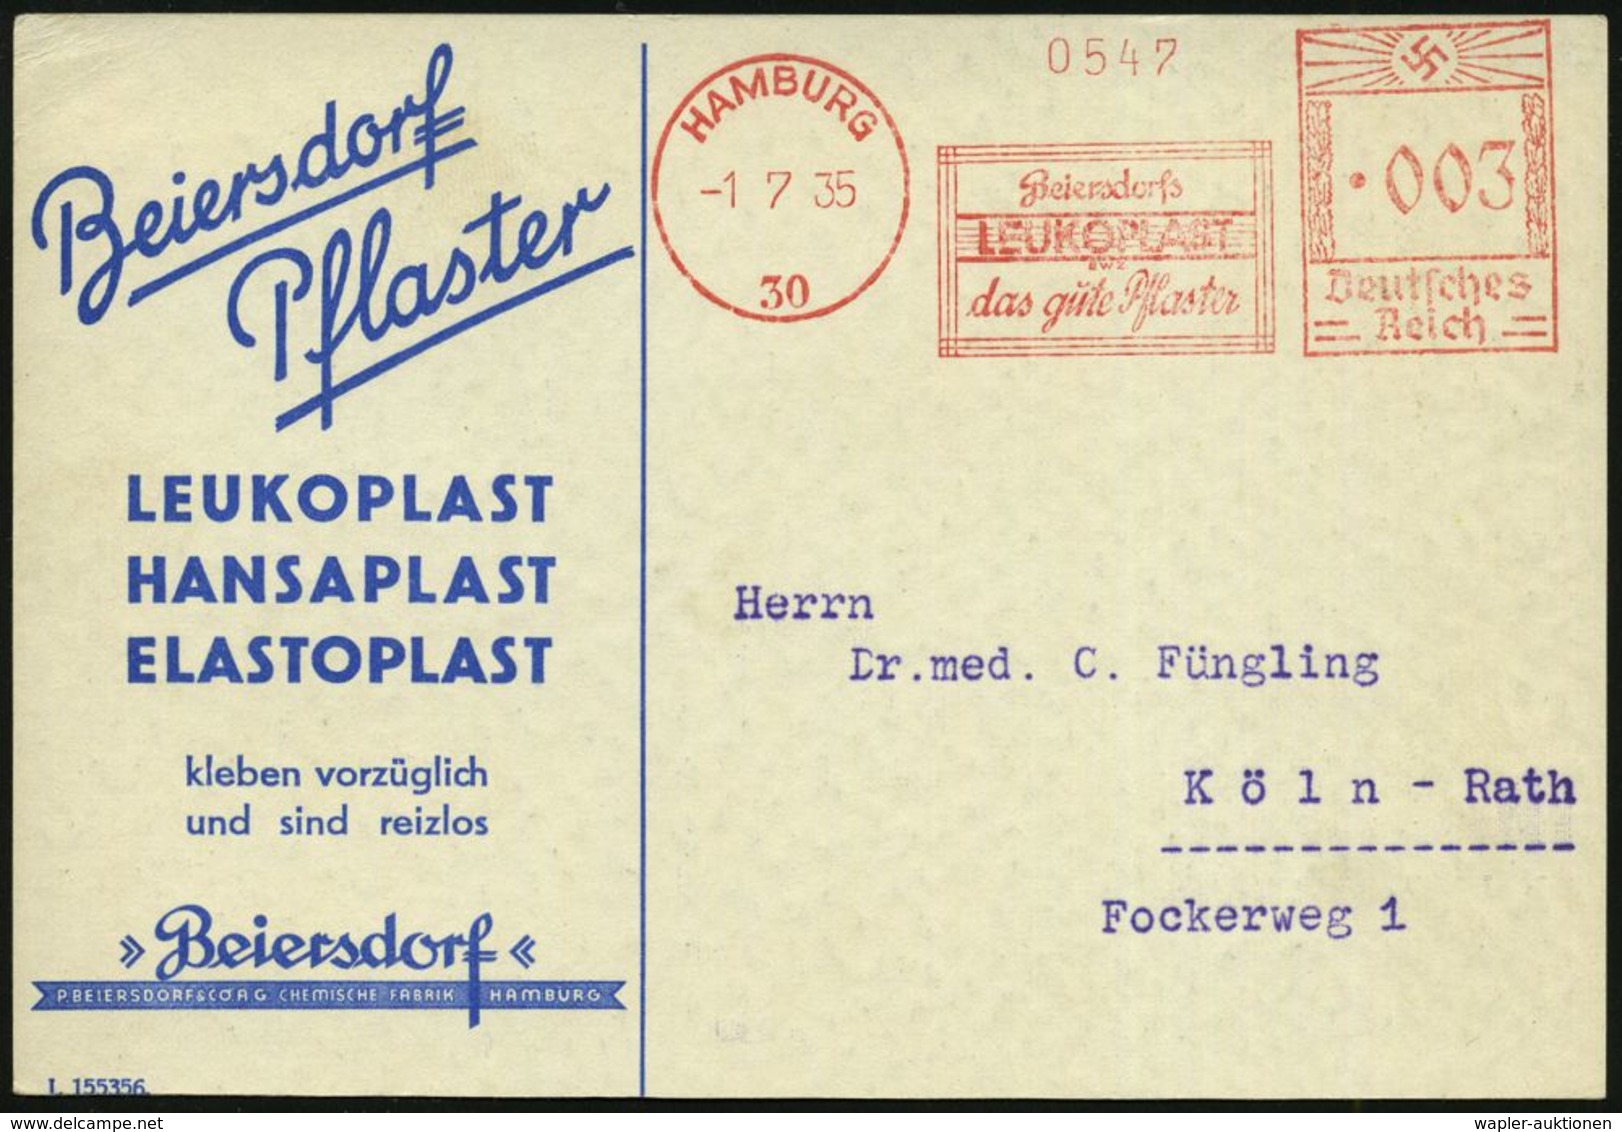 MEDIZINISCHE AUSRÜSTUNG & INSTRUMENTE : HAMBURG/ 30/ Beiersdorfs/ LEUKOPLAST/ Das Gute Pflaster 1935 (1.7.) AFS Klar Auf - Medizin